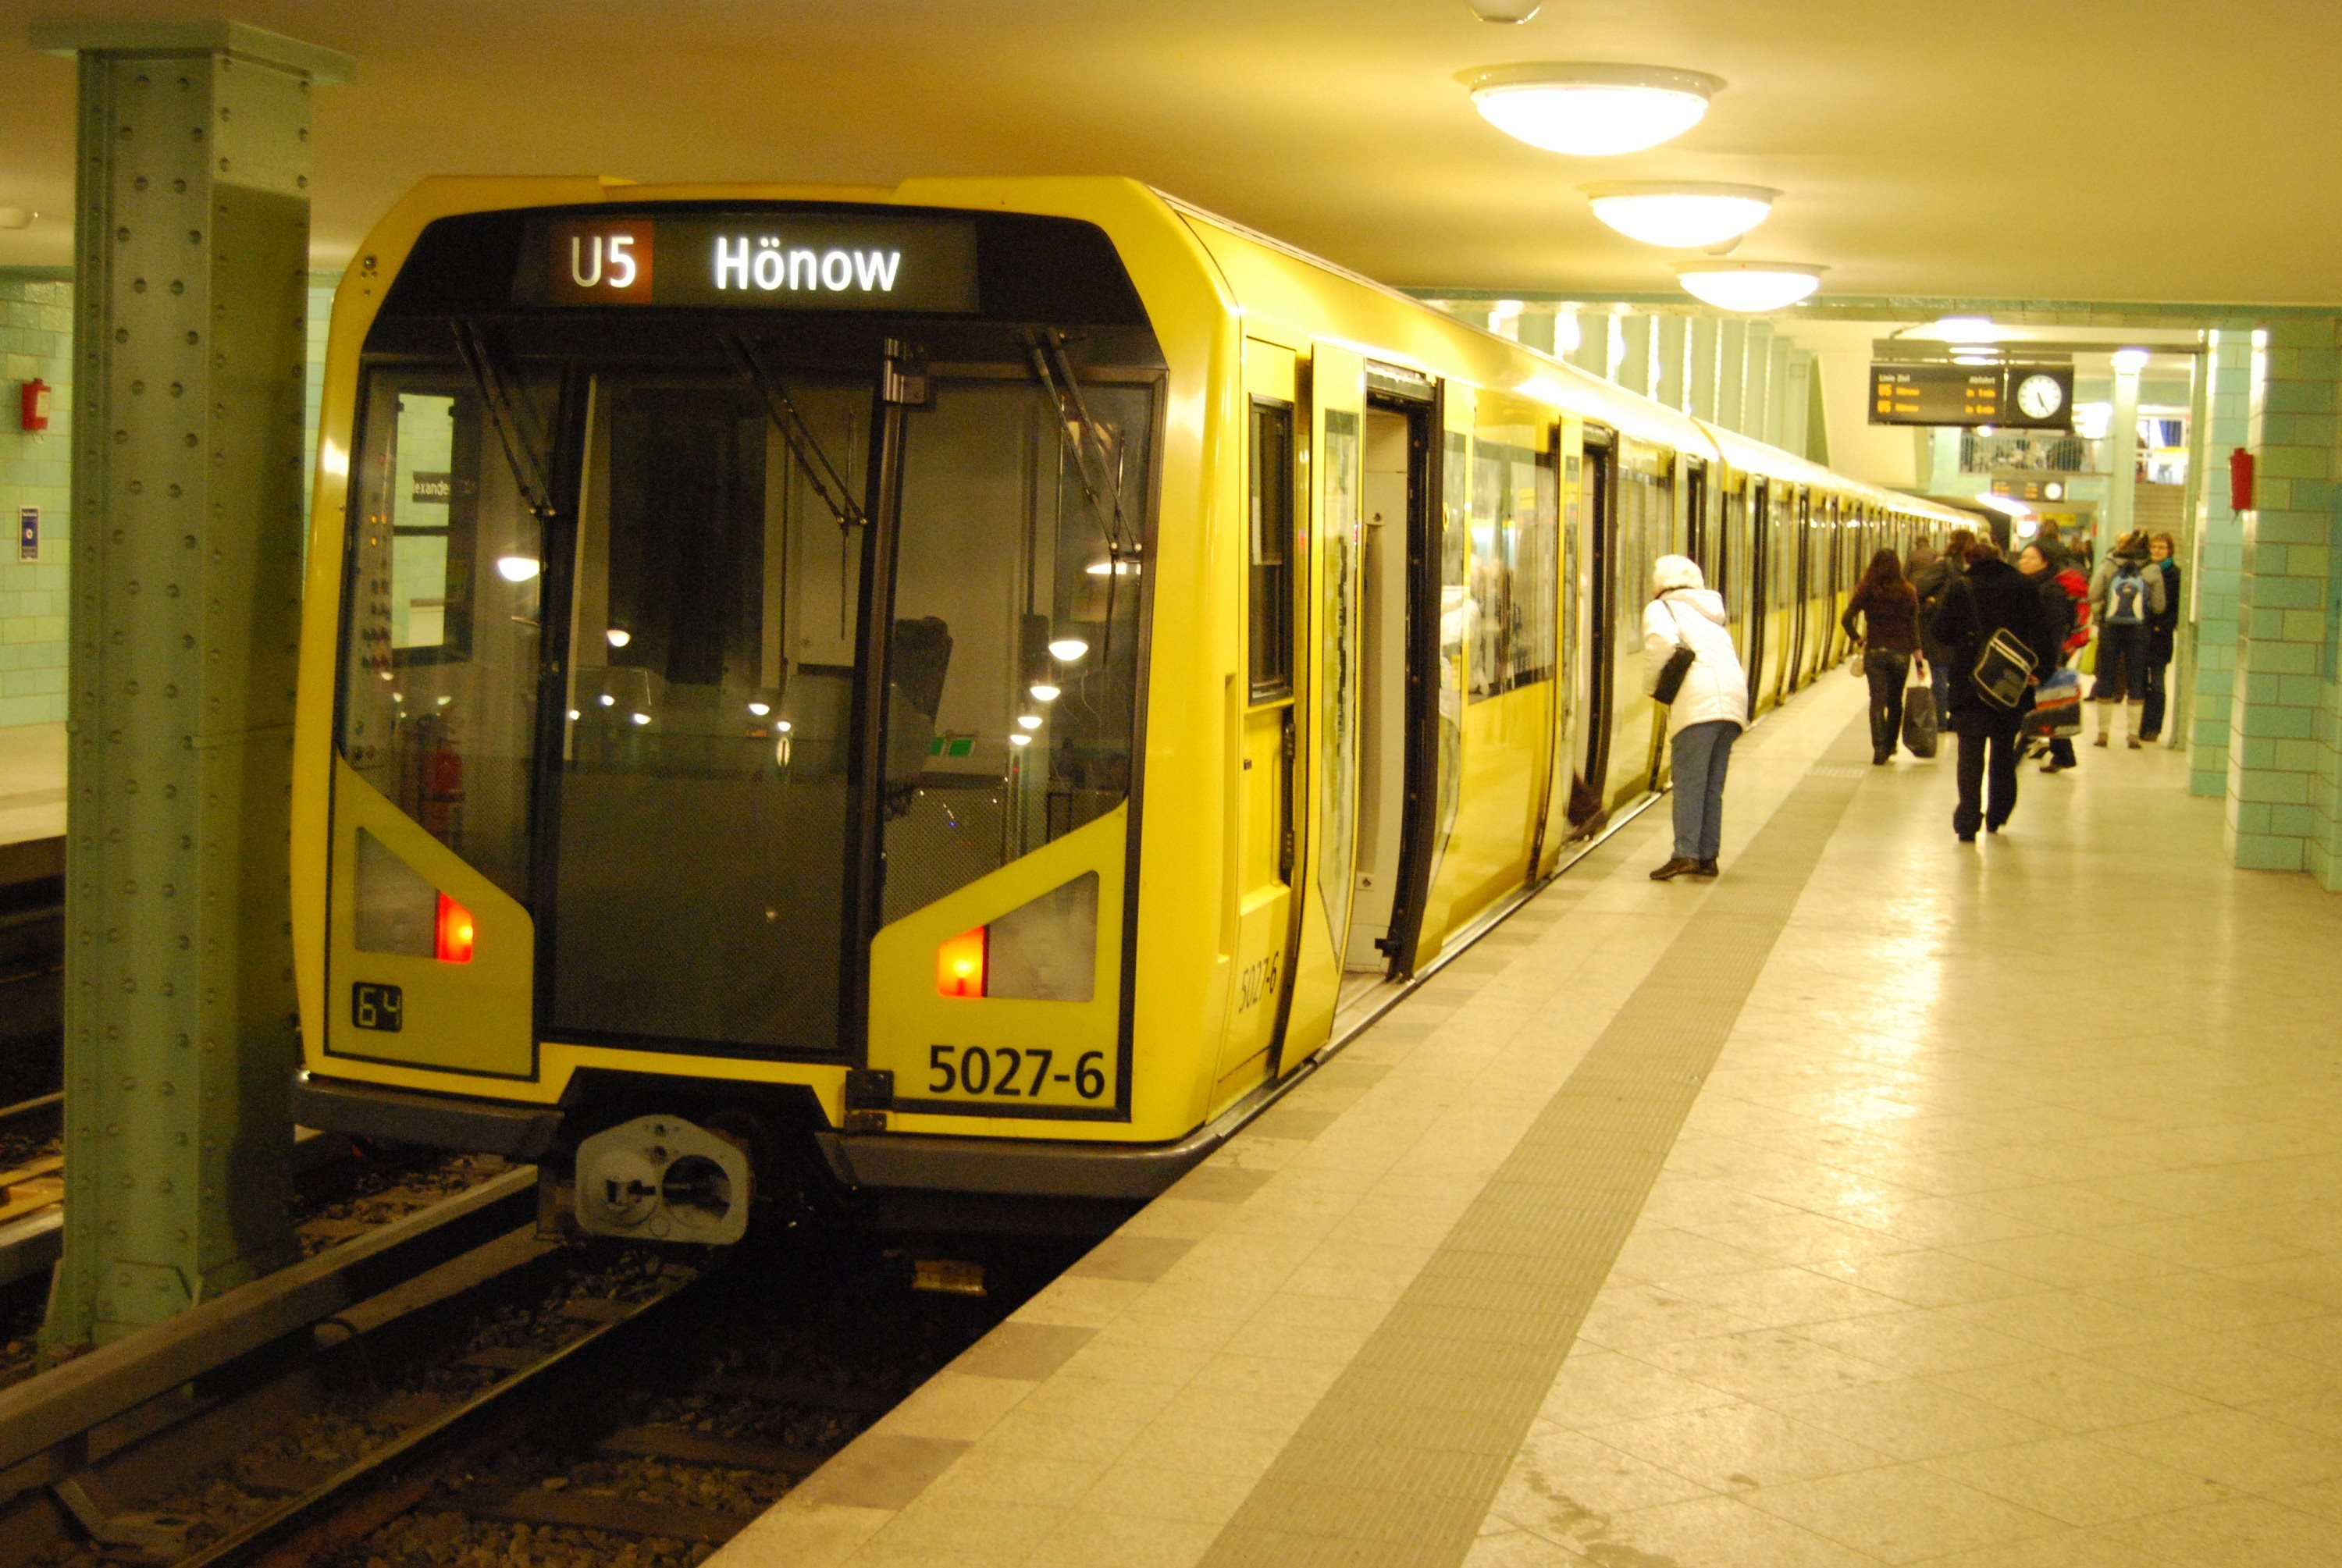 U5 B-Hönow B-Alexanderplatz